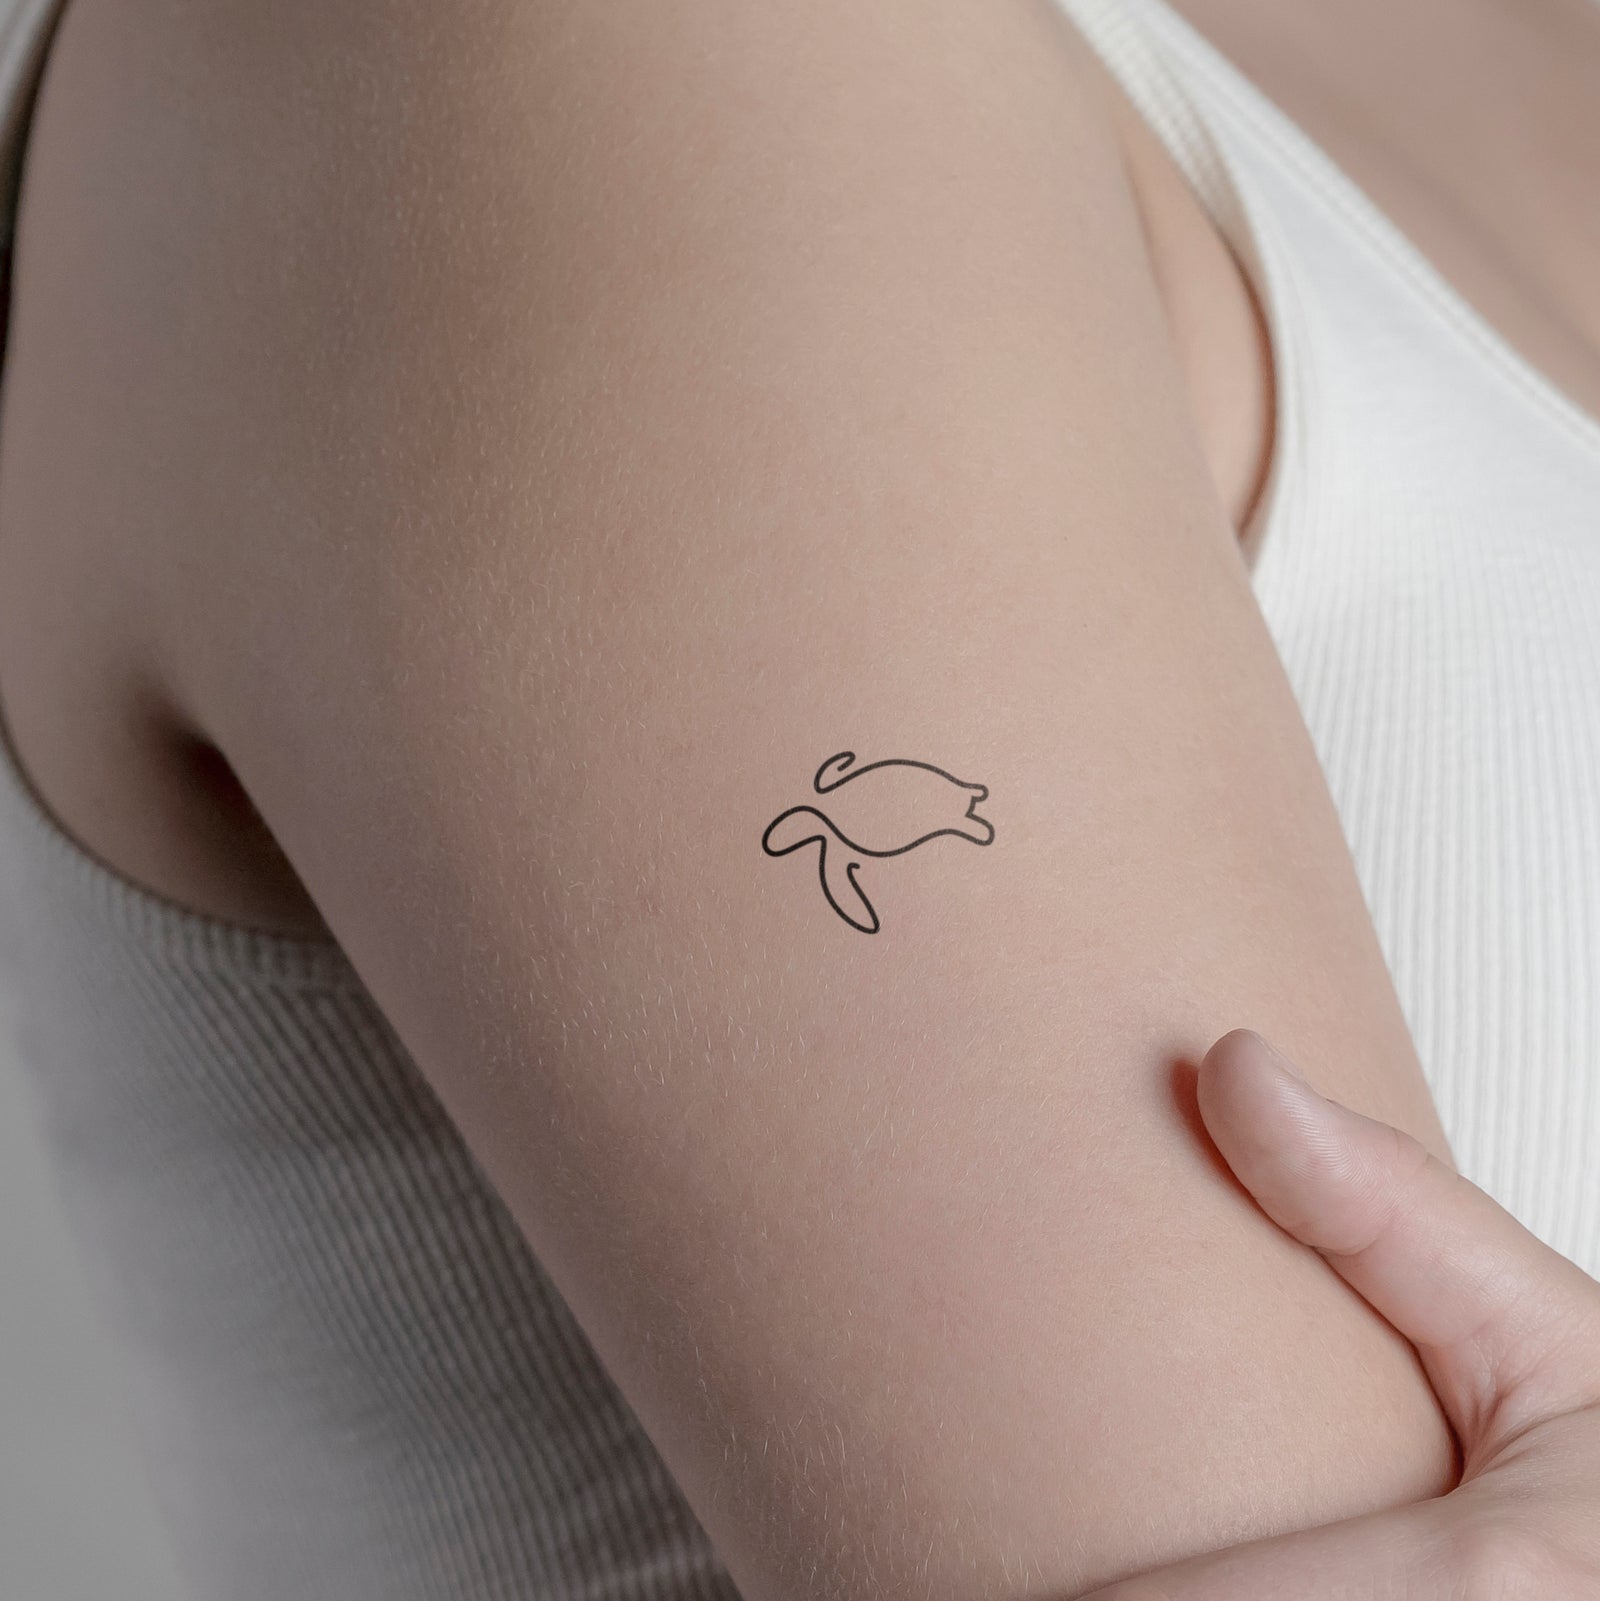 Spiritual Meaningful Sea Turtle Tattoo